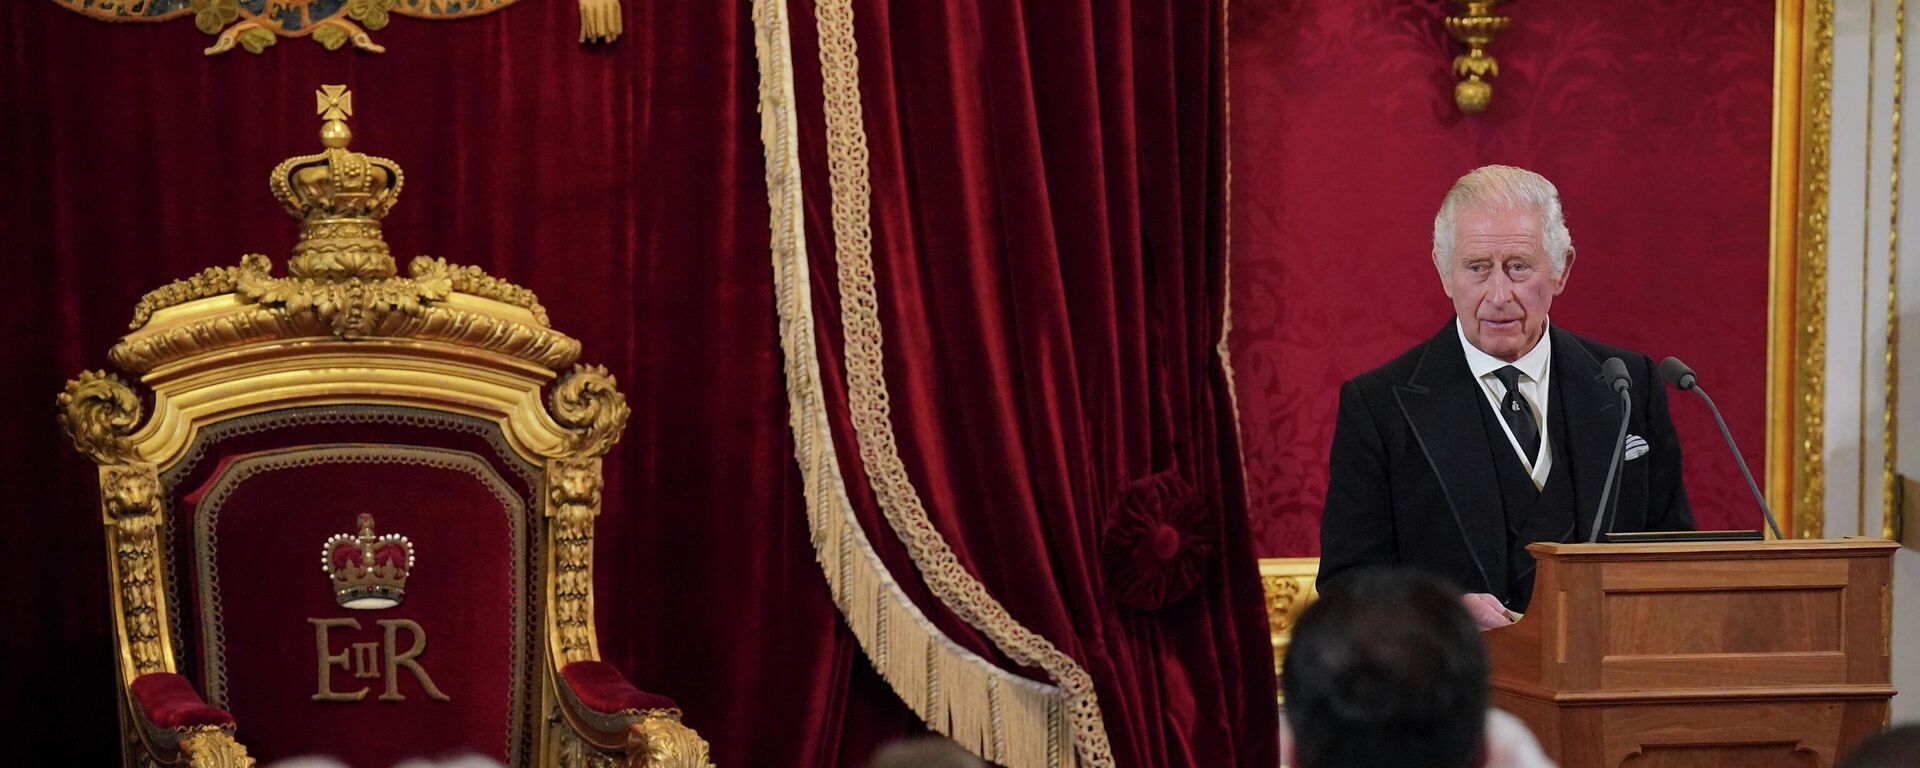 الملك تشارلز الثالث خلال مجلس الانضمام في قصر سانت جيمس، لندن، إنجلترا 10 سبتمبر 2022، حيث تم تنصيبه رسميًا ملكًا. - سبوتنيك عربي, 1920, 30.10.2022